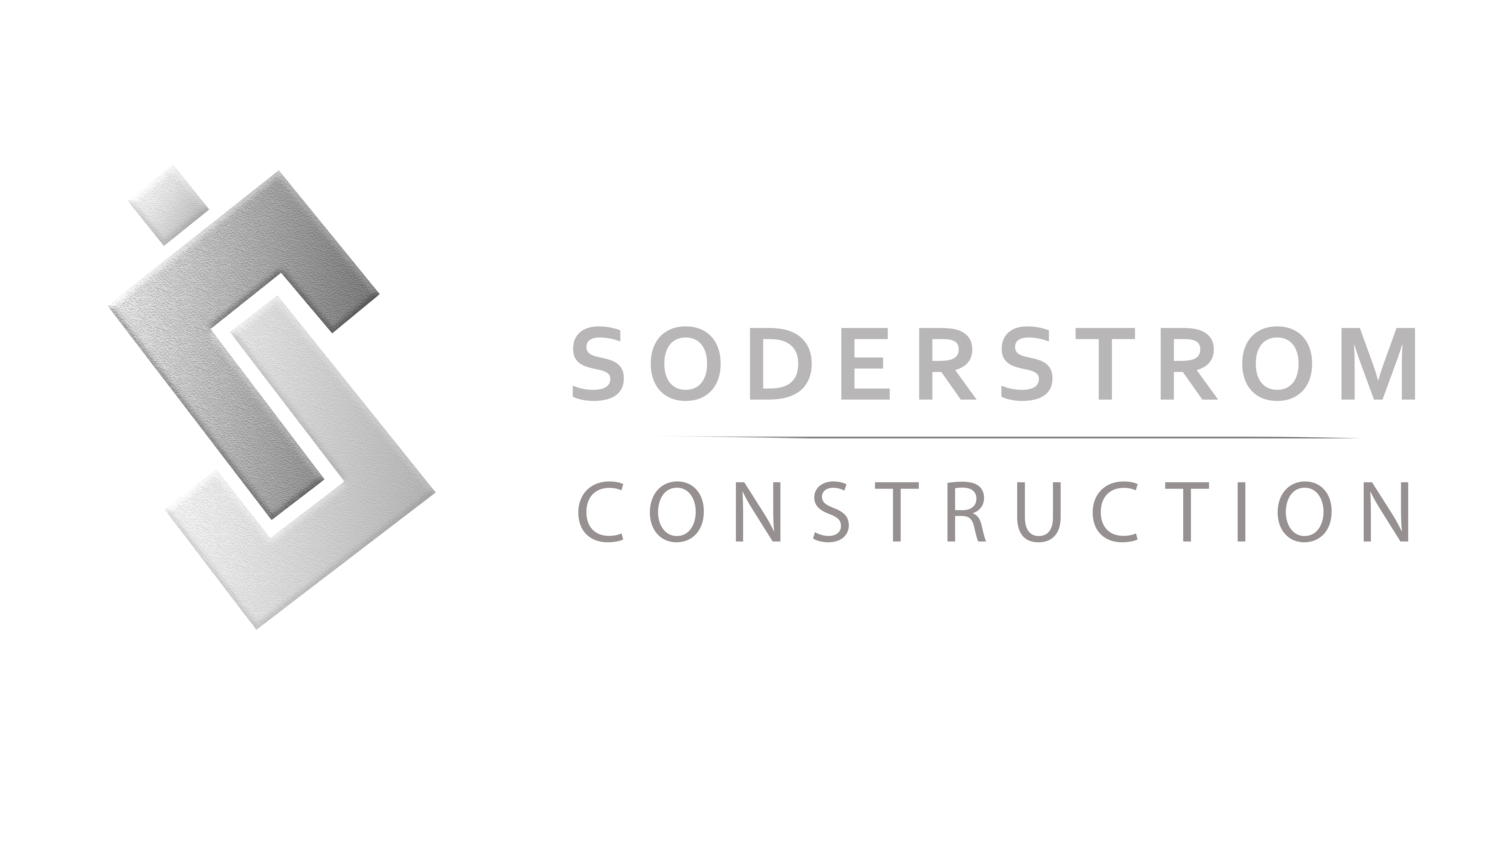 Soderstrom Construction